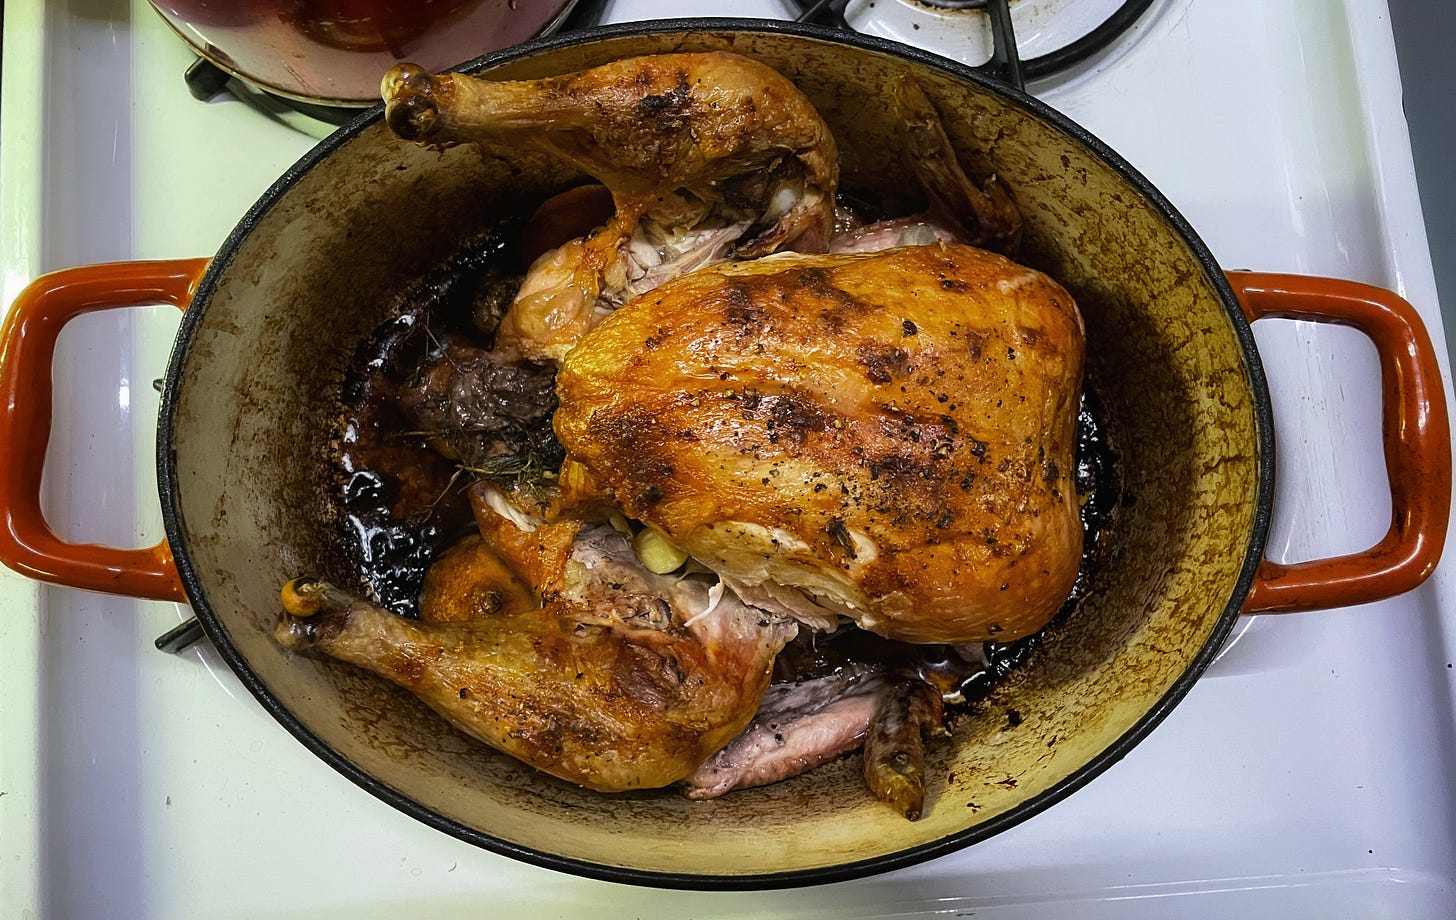 An organic, free-range chicken after roasting in an orange roasting pan.